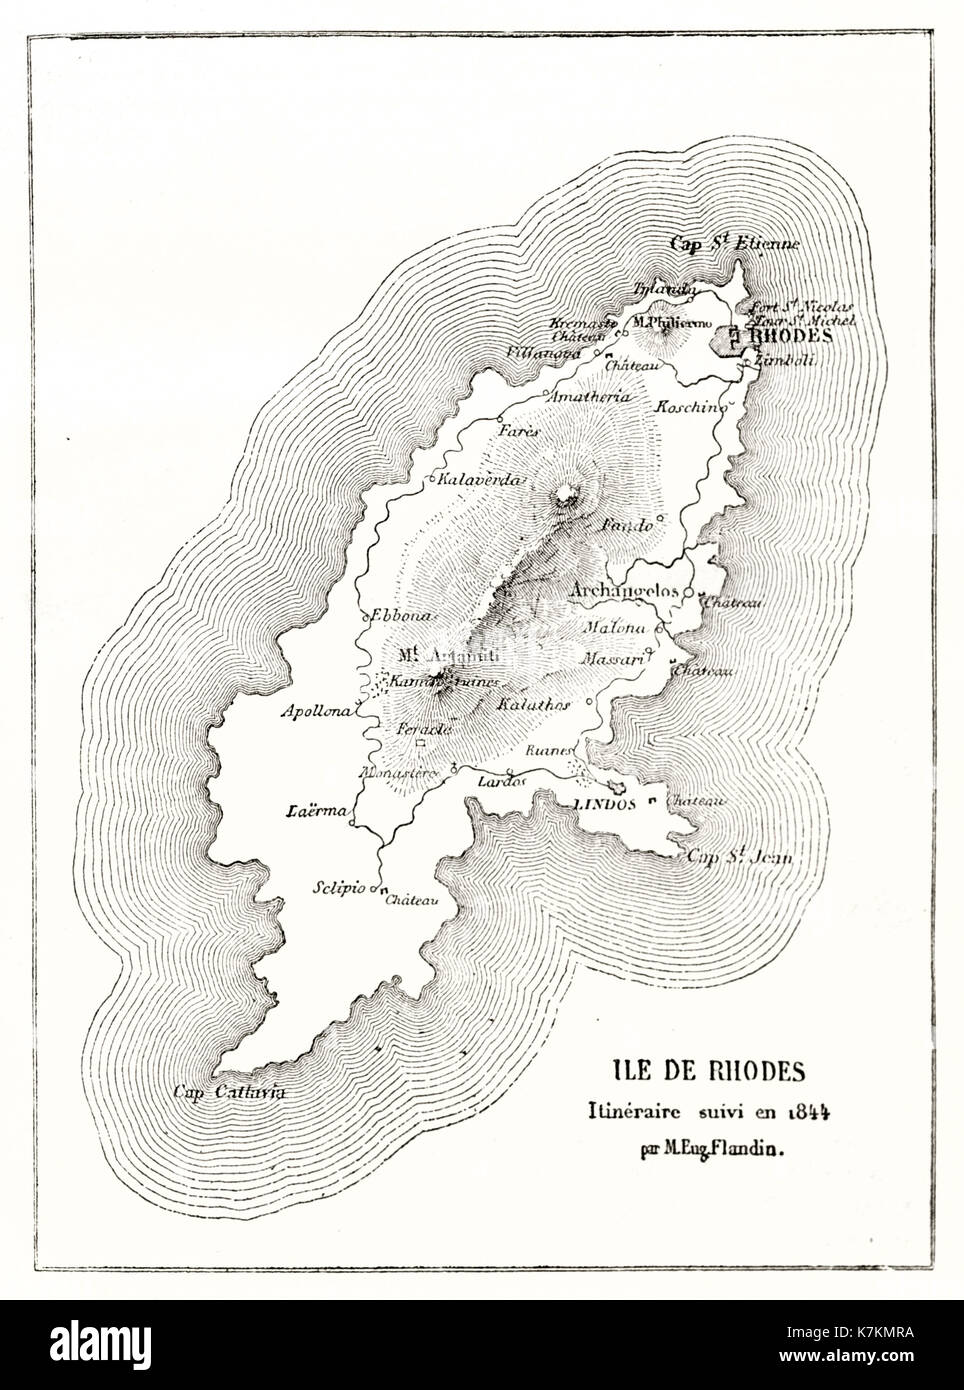 Old map of Rhodes island. By Flandin, publ. on Le Tour du Monde, Paris, 1862 Stock Photo